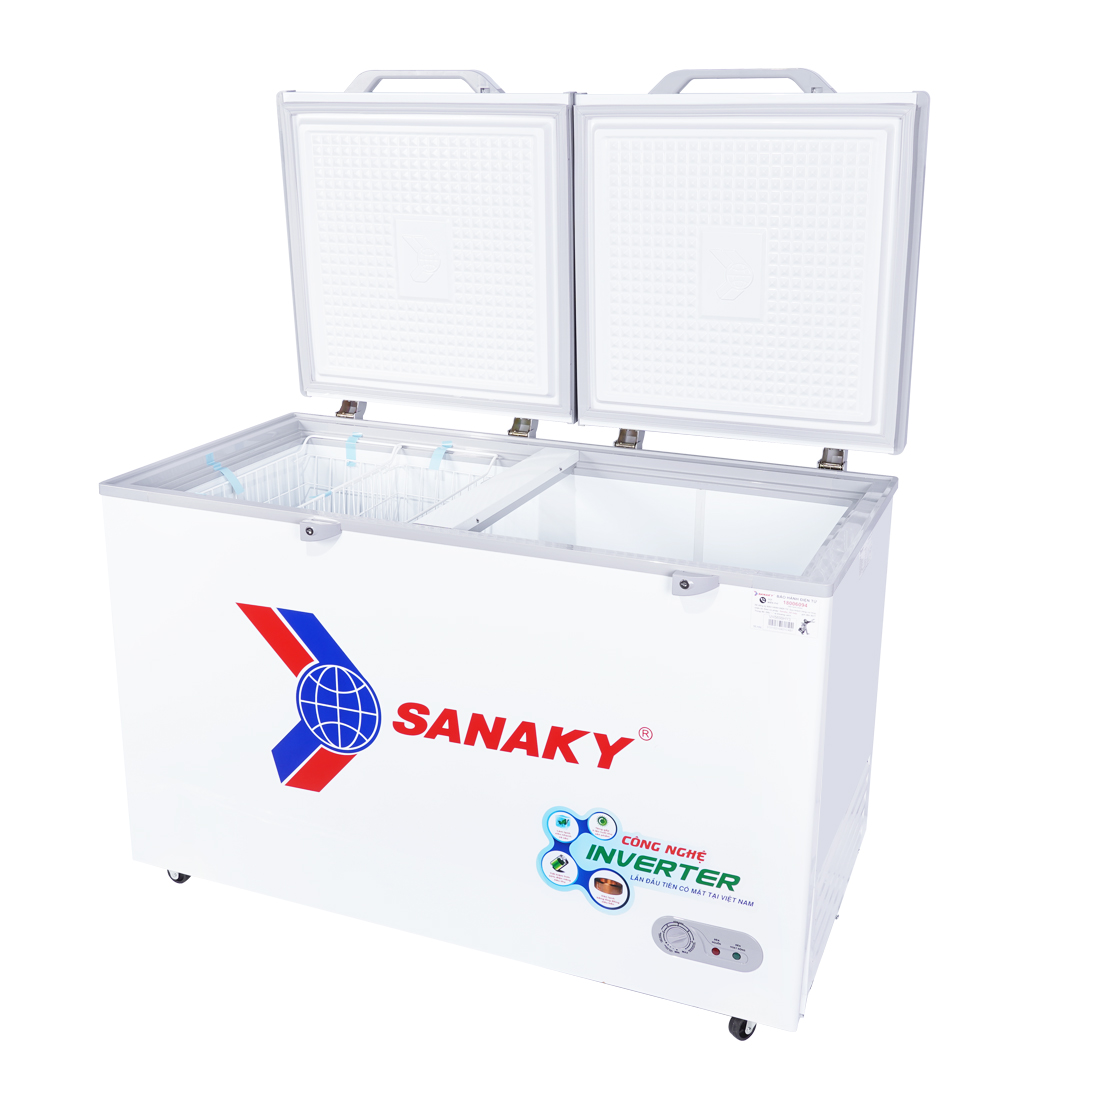 Tủ Đông Sanaky VH-5699HY3